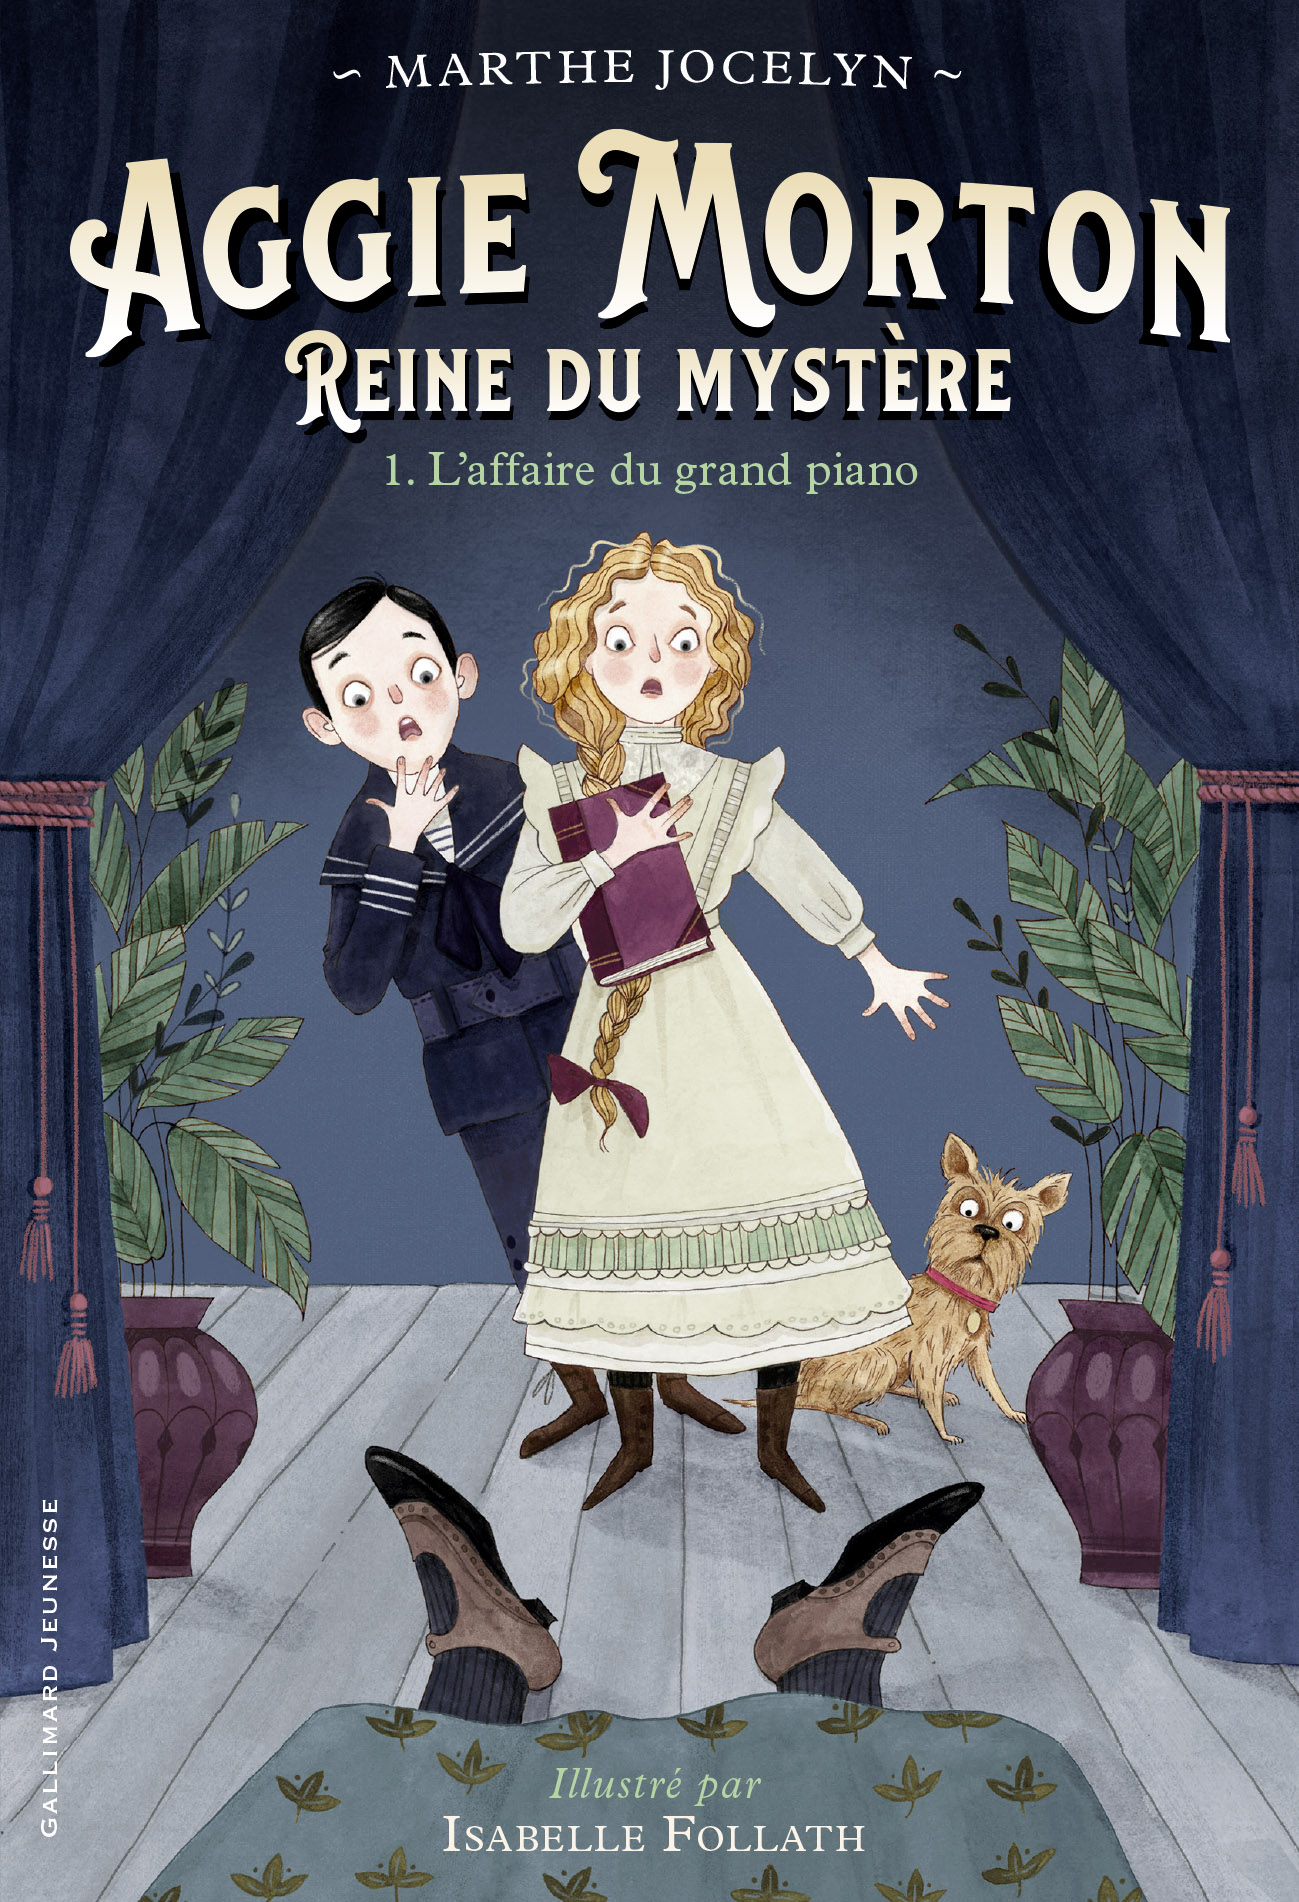 Afficher "Aggie Morton reine du mystère (Tome 1) - L'affaire du grand piano"